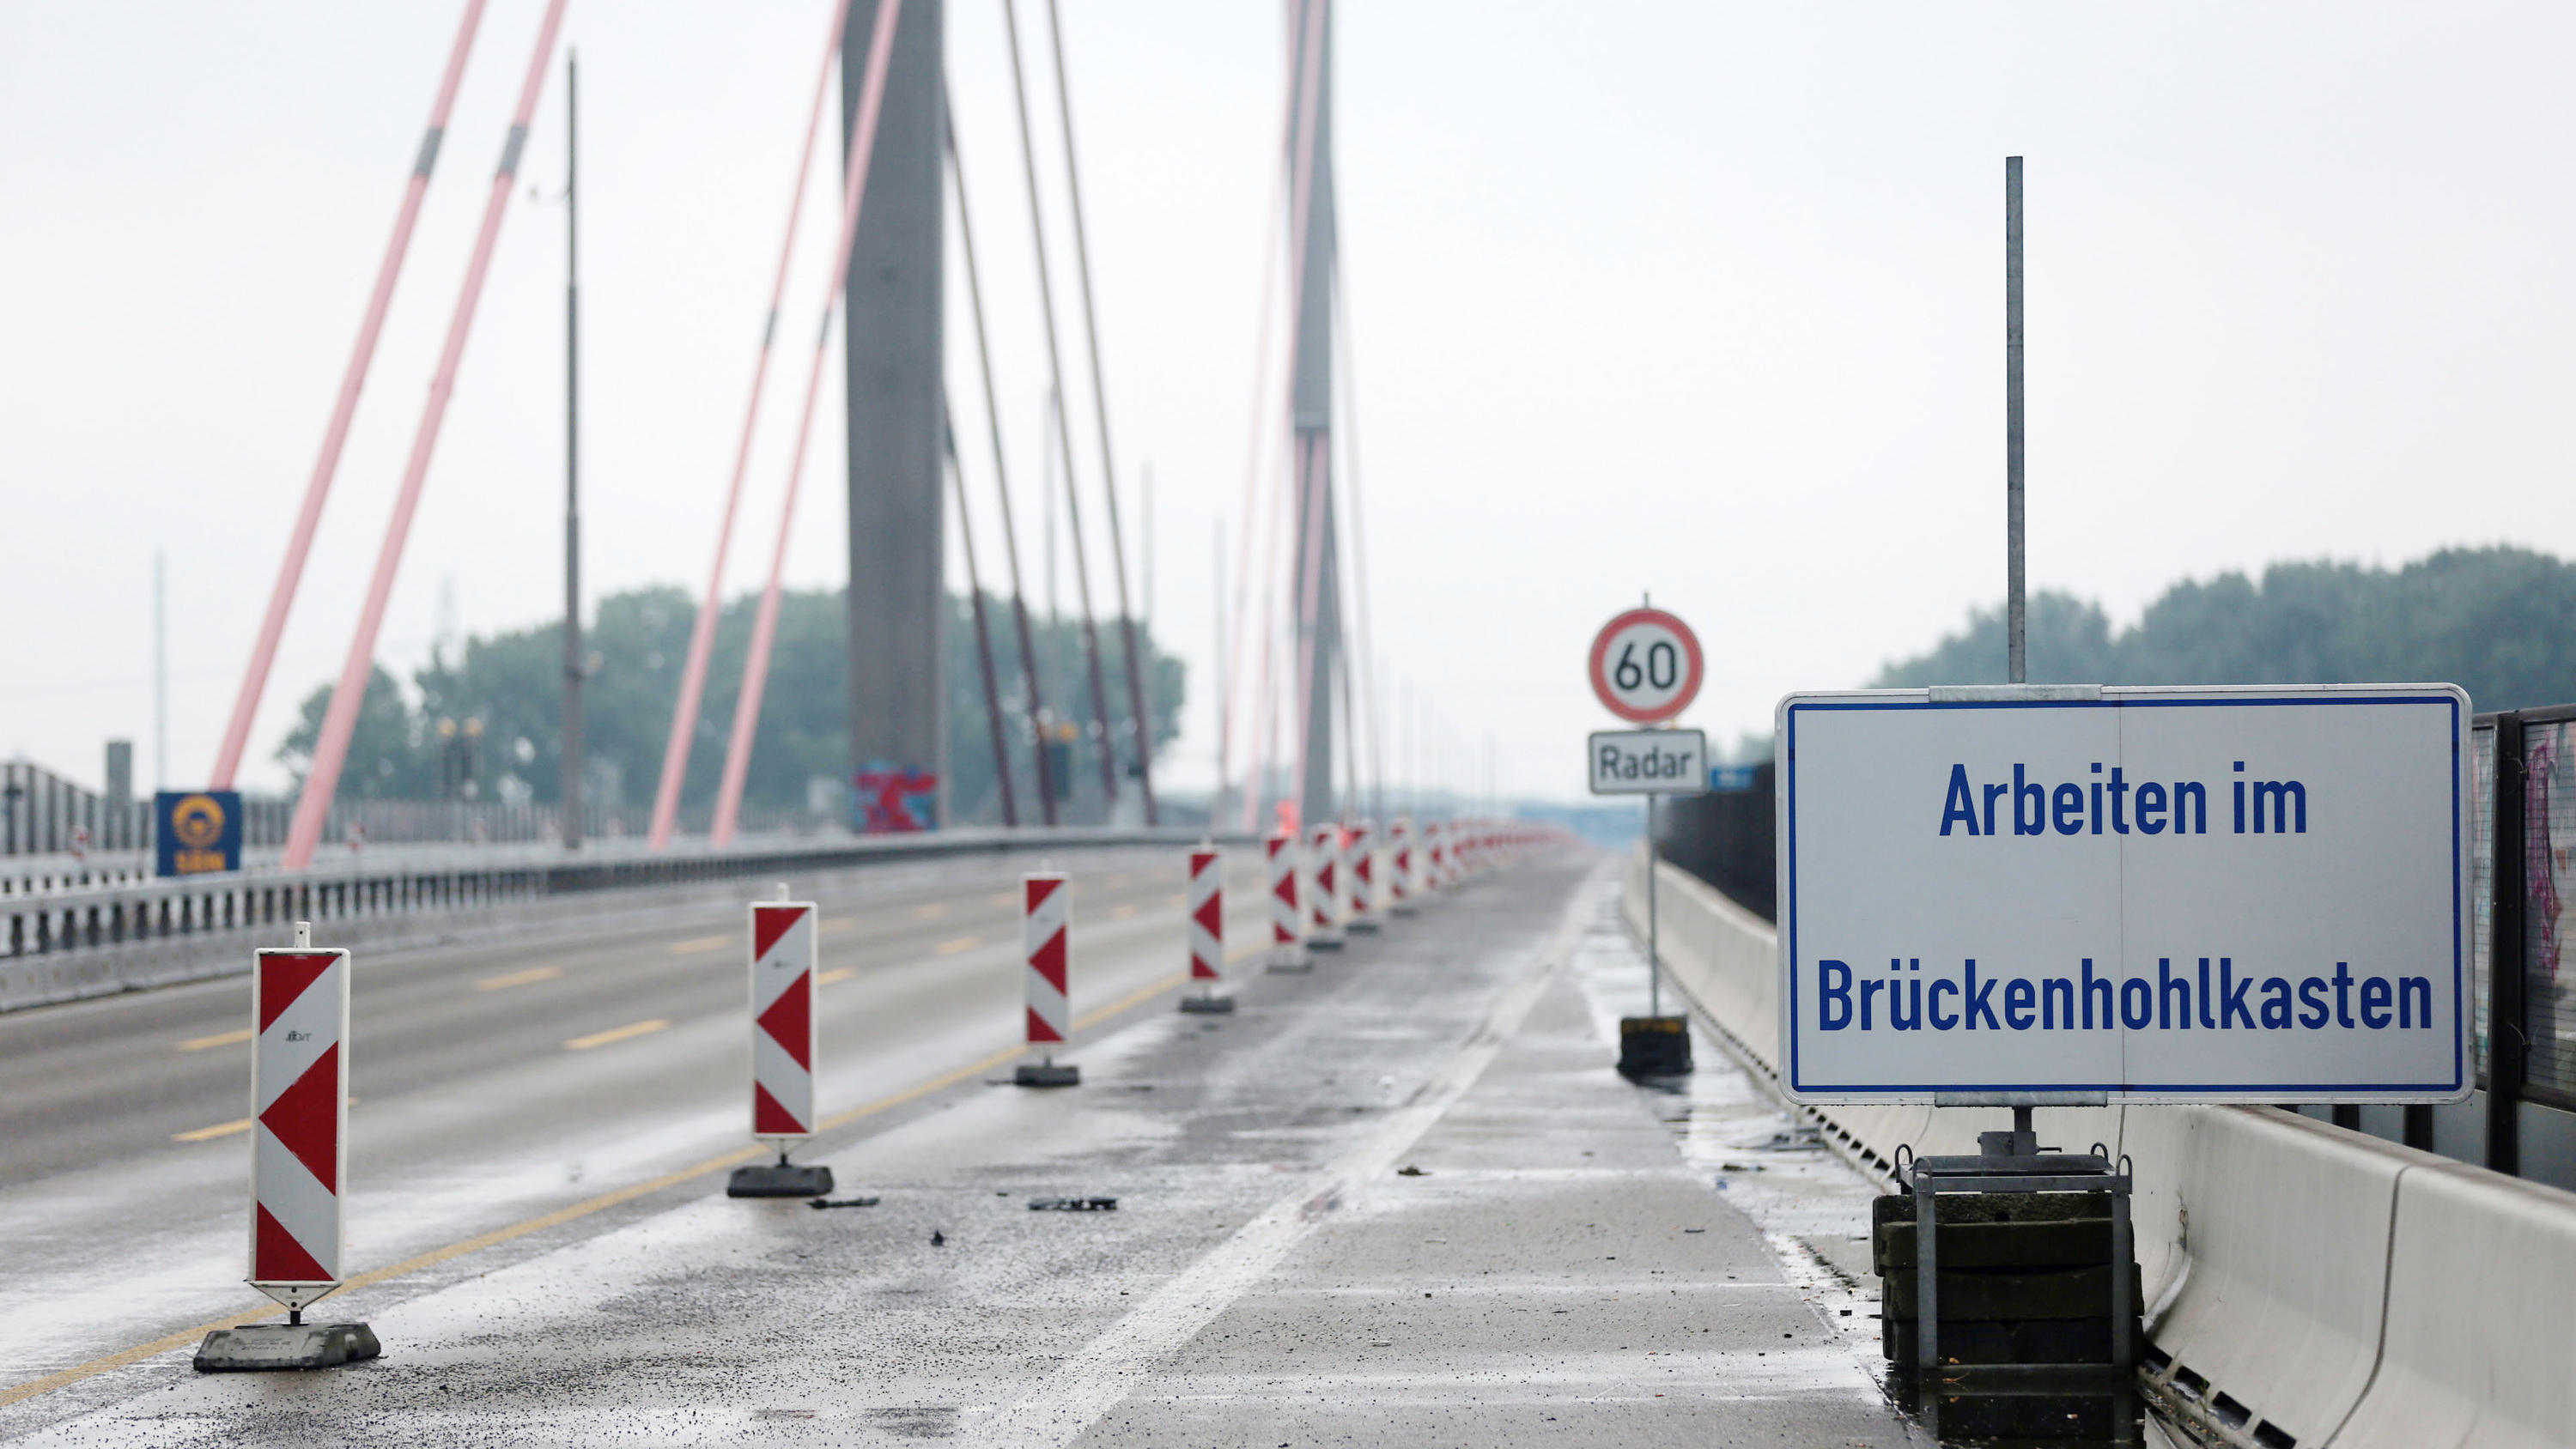 ARCHIV - 12.08.2016, Nordrhein-Westfalen, Köln: Ein Schild mit der Aufschrift "Arbeiten im Brückenhohlkasten" steht auf der Leverkusener Brücke der A1. (zu dpa «Brückeneinsturz in Italien - kein zusätzlicher Handlungsbedarf in NRW» vom 14.08.2018) Fo